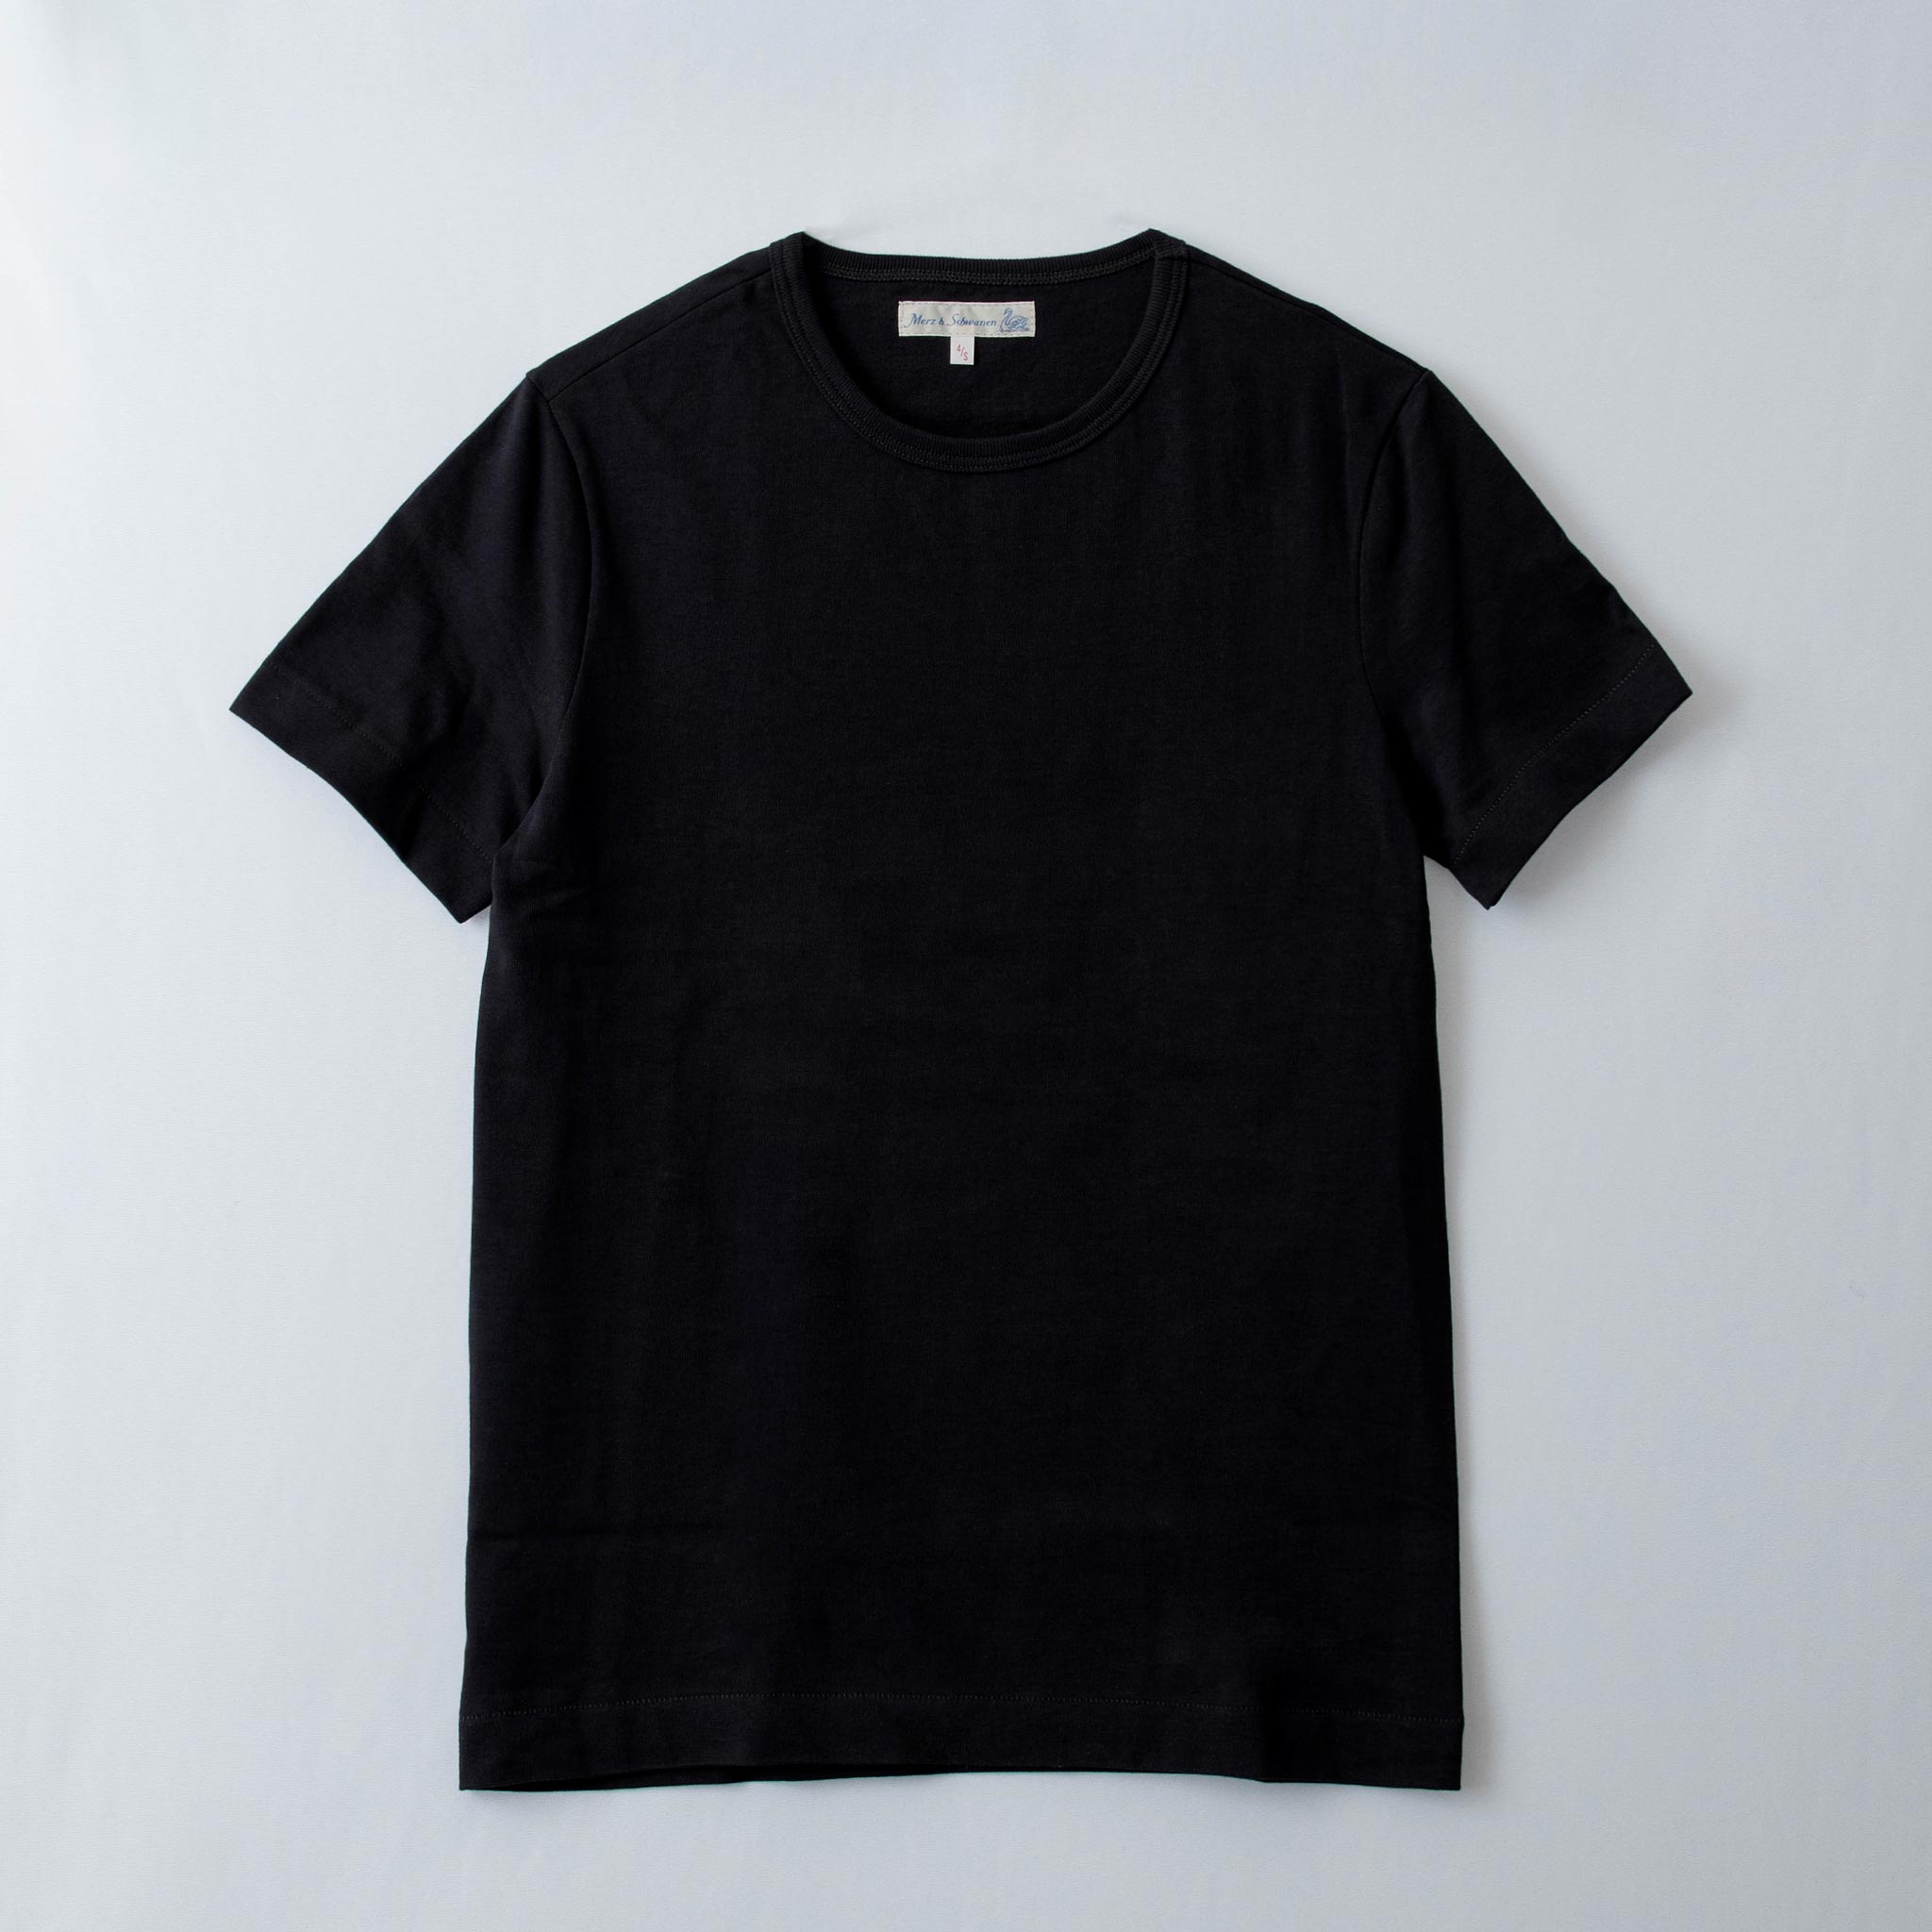 メルツベーシュヴァーネン MERZ B. SCHWANEN メンズ Tシャツ GOOD ORIGINALS CREW NECK T-SHIRT 215